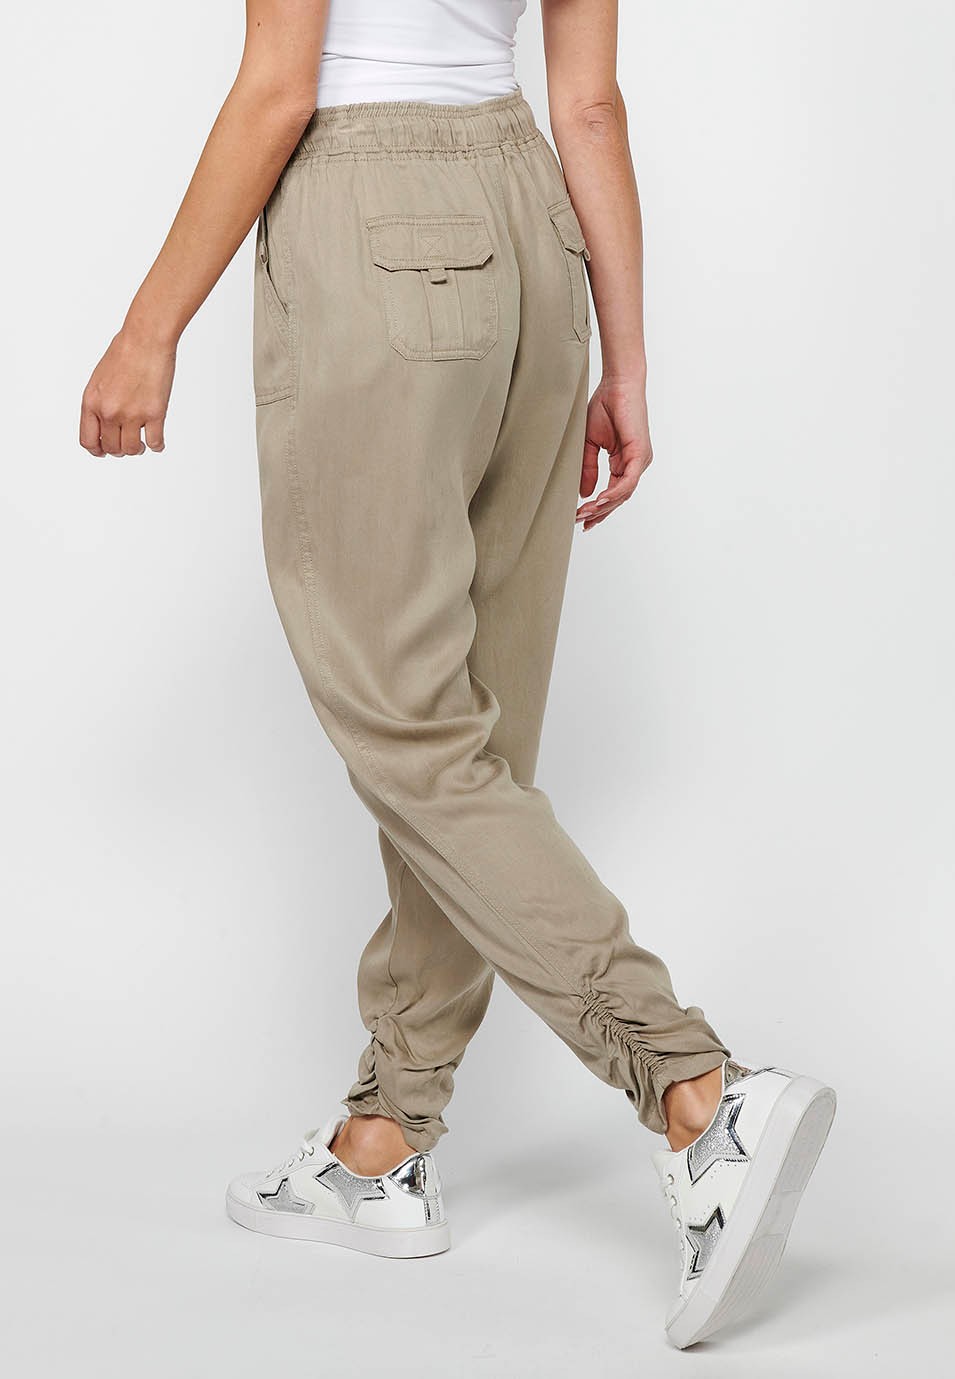 Pantalón largo jogger con Acabado rizado y Cintura engomada con Cuatro bolsillos, dos traseros con solapa de Color Gris para Mujer 8